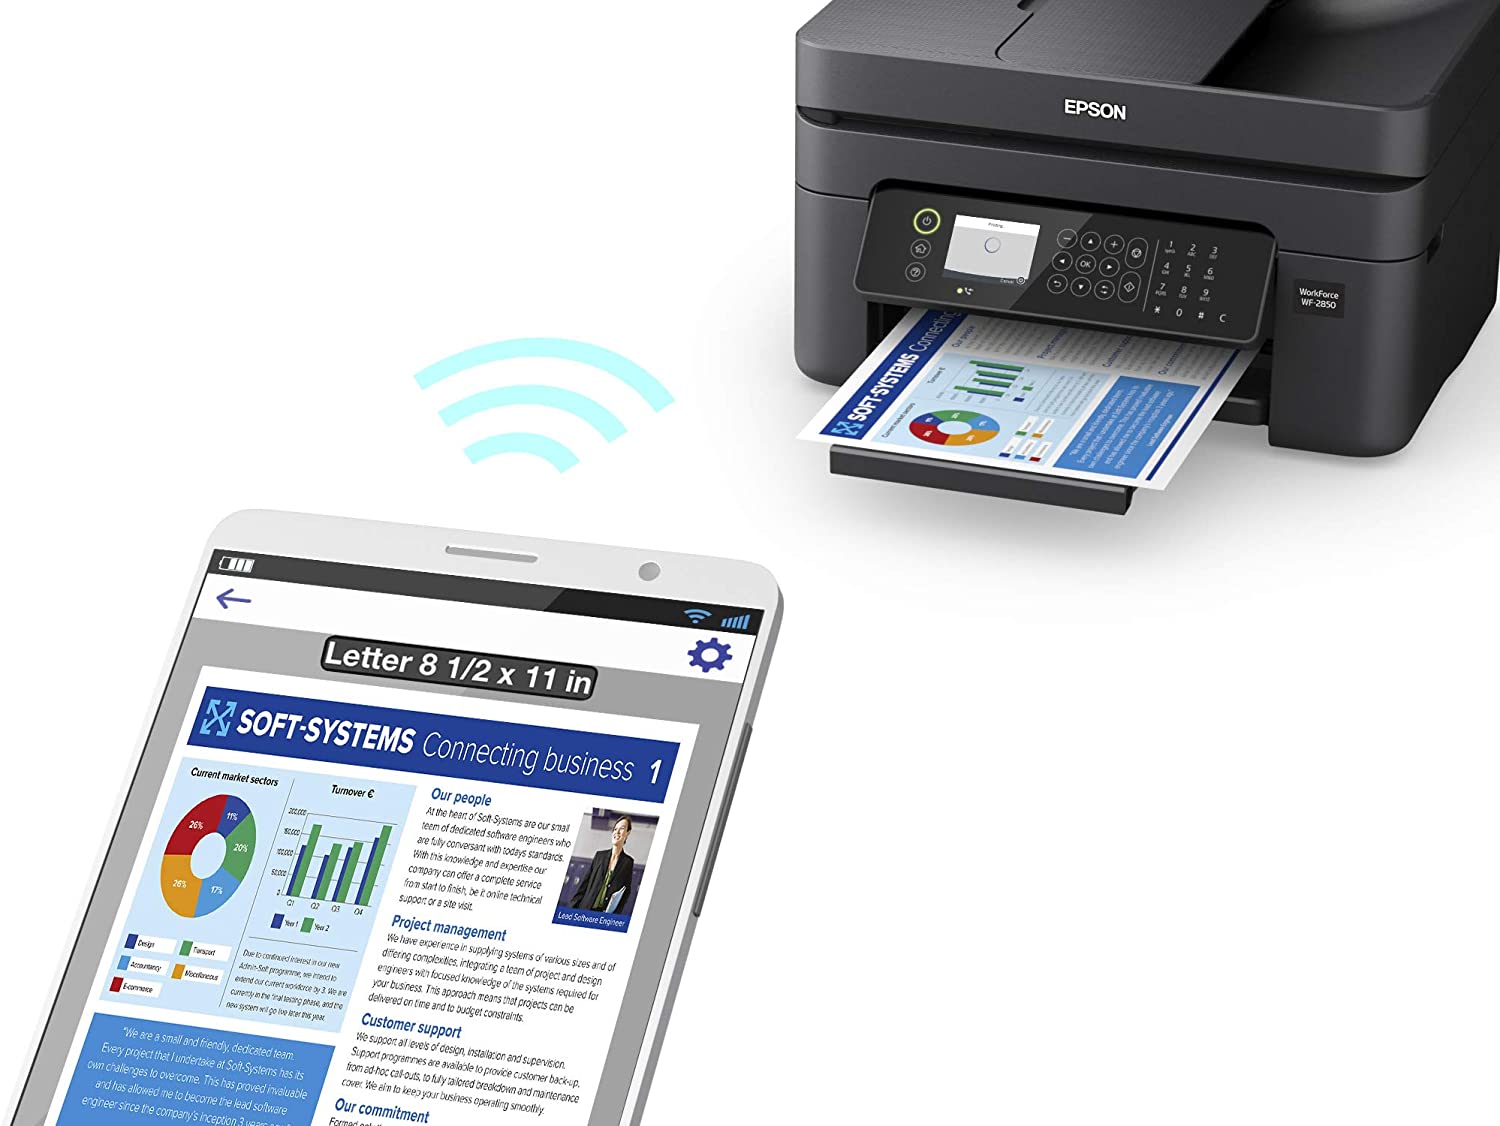 Impresora Epson WF-2850: Multifuncion impresora-copiadora-escaner fax, duplex en impresion A4, Wifi, USB, Pantalla color, bandeja inferior 150 hojas, 33 paginas/minuto Black, 20 paginas/minuto Color, nueva, ecotank dye, garantia 1 año o 5000pg